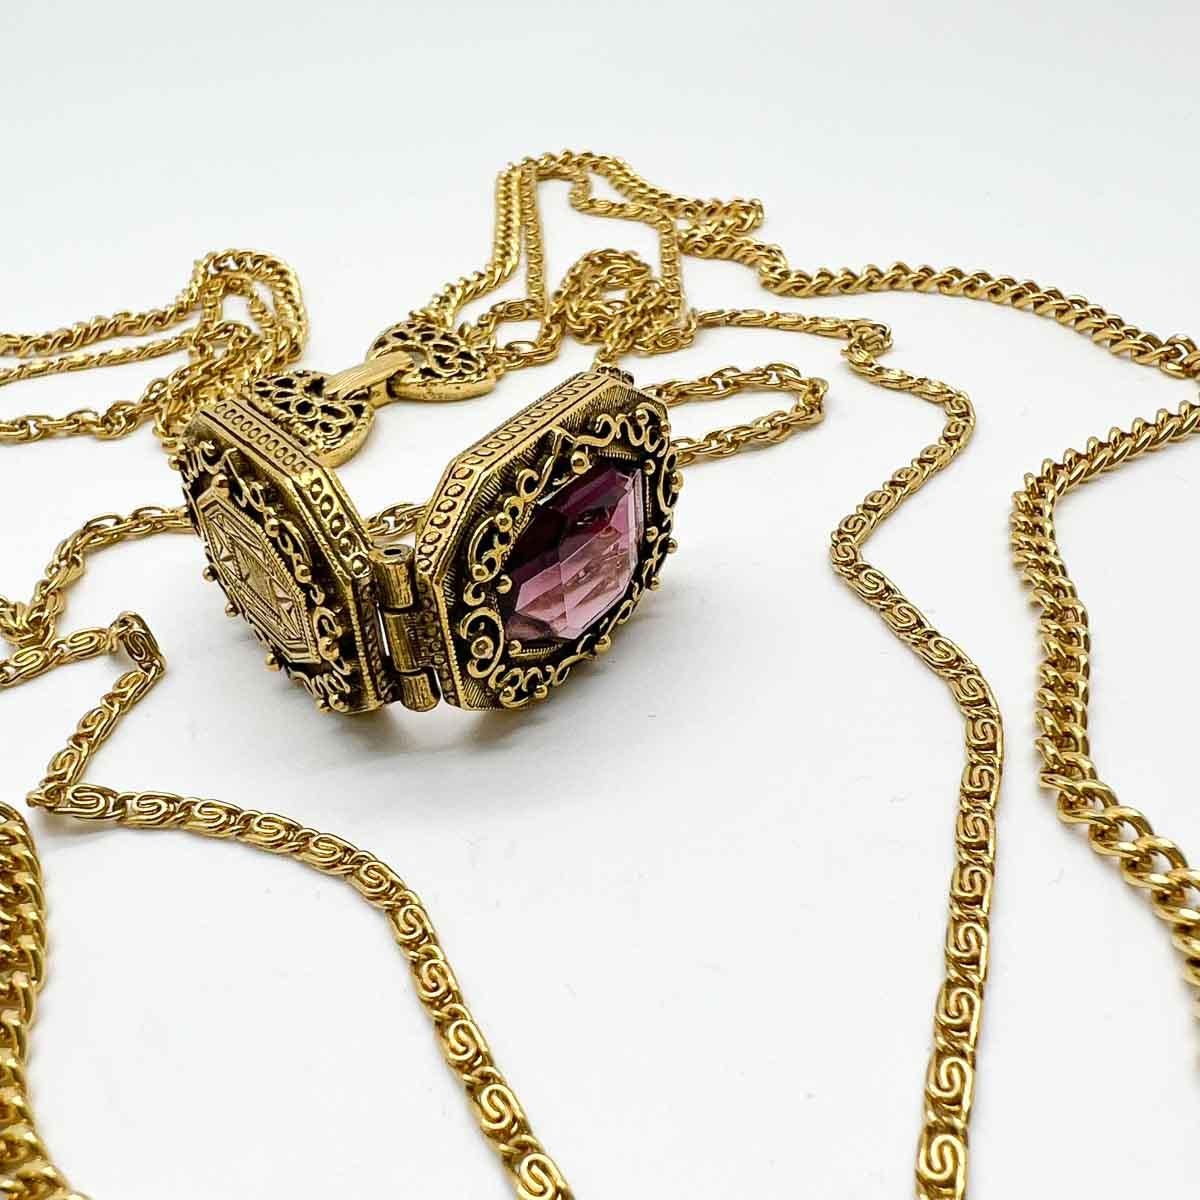 Un collier de chaîne de médaillons en améthyste Goldette Vintage ultra cool. De longues chaînes triples ornées d'un médaillon à ouverture fantaisie serti d'un cristal d'améthyste, inspirées des bijoux victoriens, constituent une pièce de